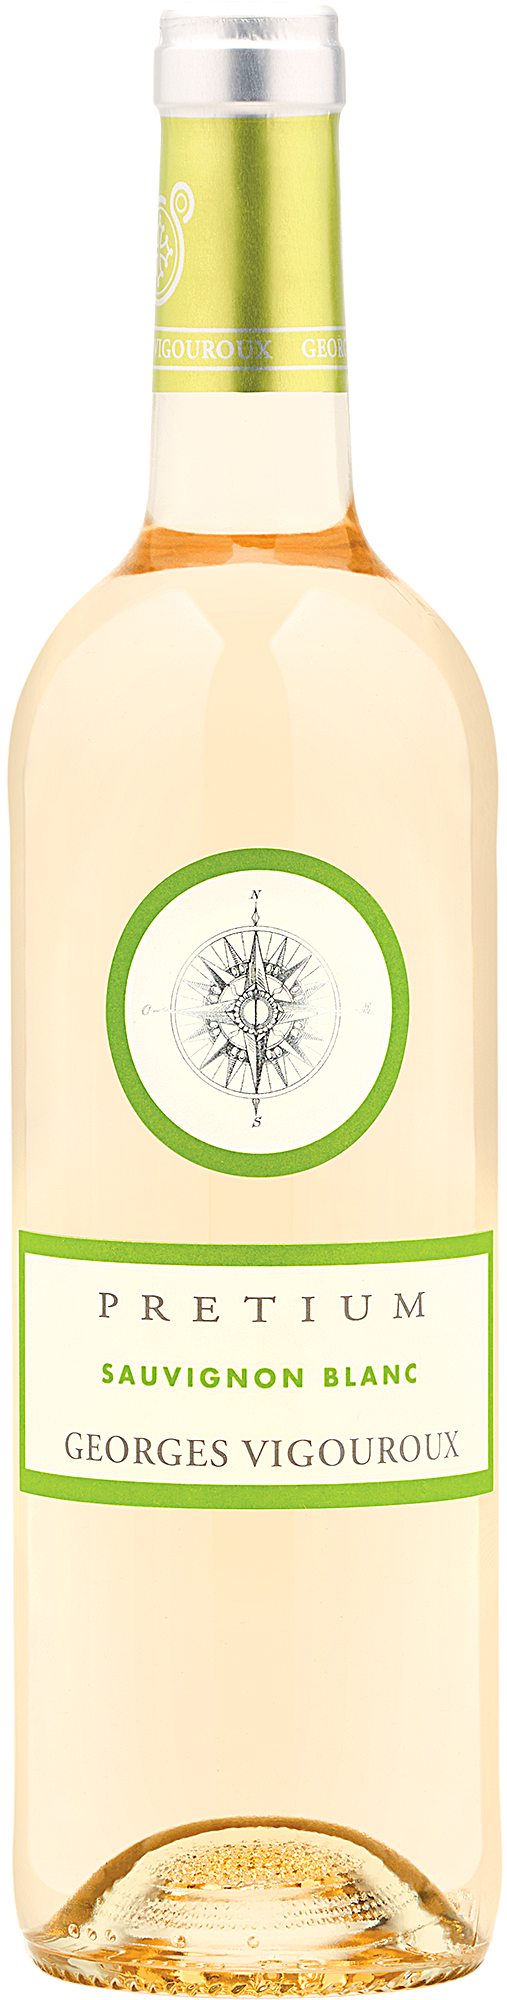 2020 Pretium Sauvignon Blanc